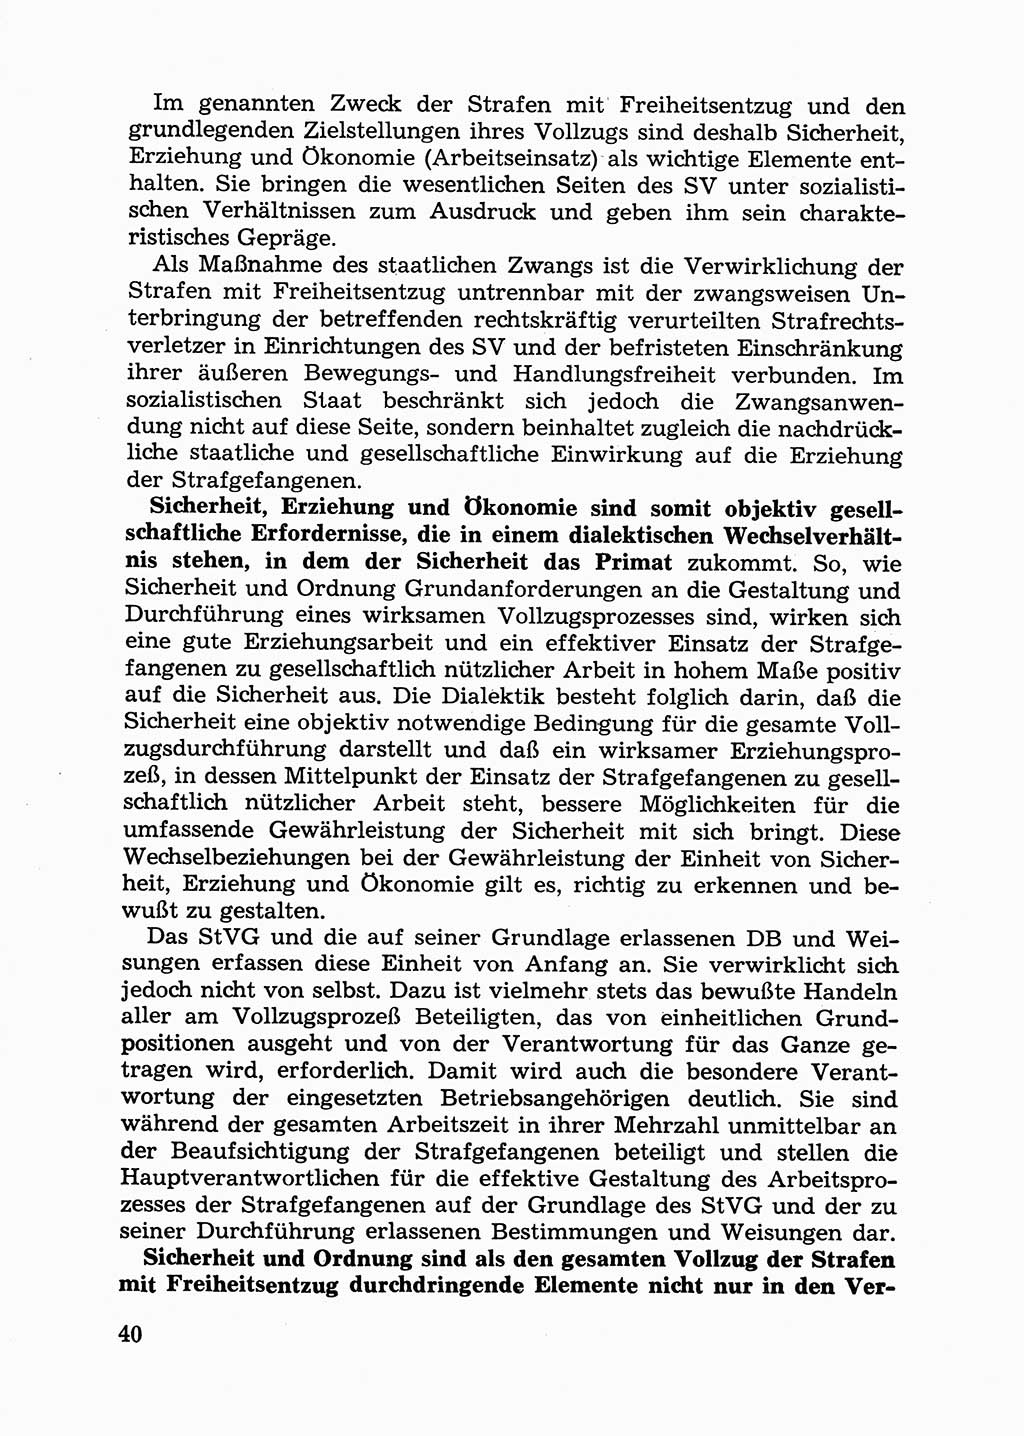 Handbuch für Betriebsangehörige, Abteilung Strafvollzug (SV) [Ministerium des Innern (MdI) Deutsche Demokratische Republik (DDR)] 1981, Seite 40 (Hb. BA Abt. SV MdI DDR 1981, S. 40)